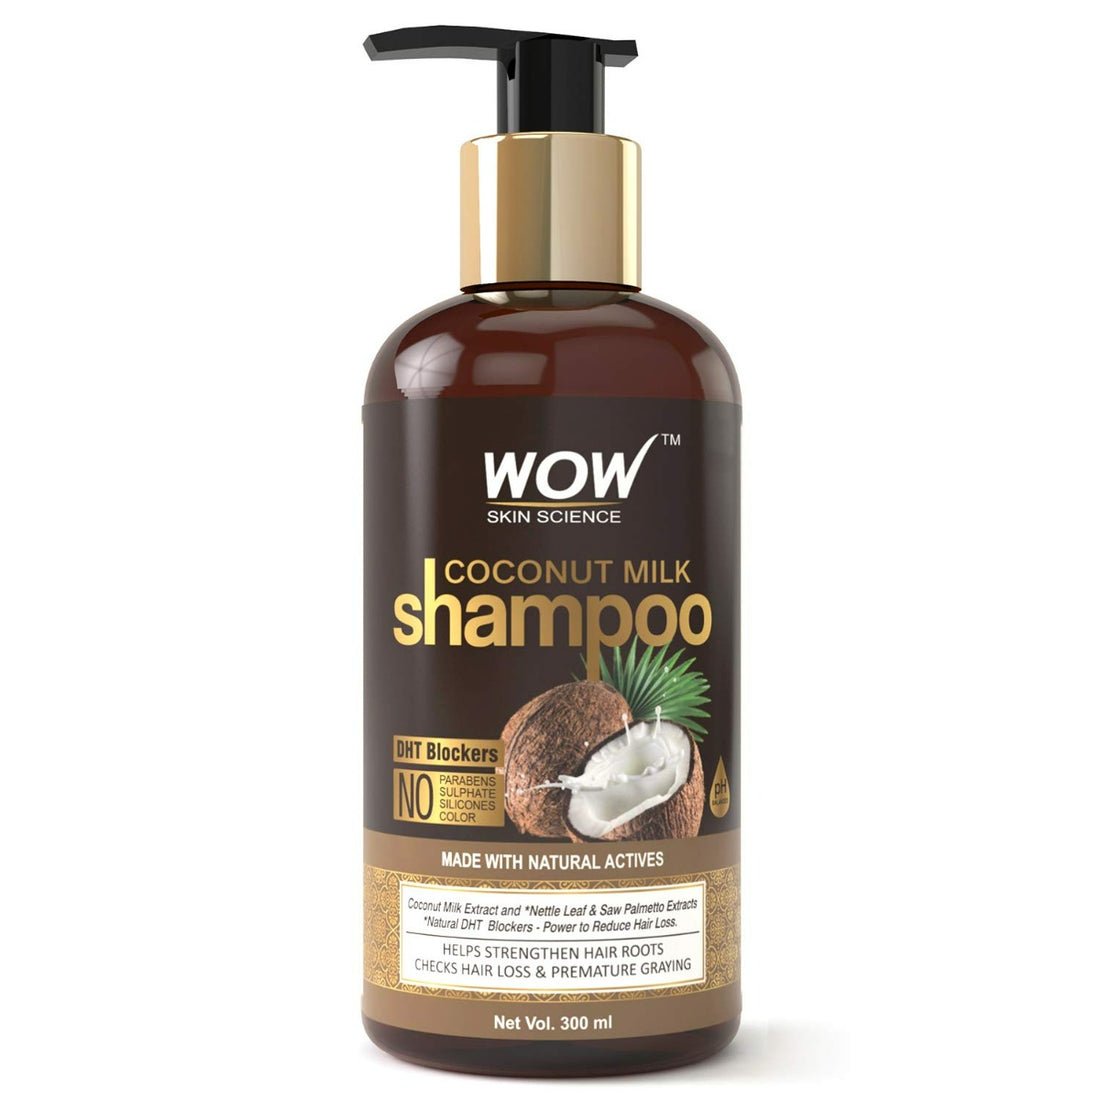 Wow Skin Science Coconut Milk Shampoo (300ml)